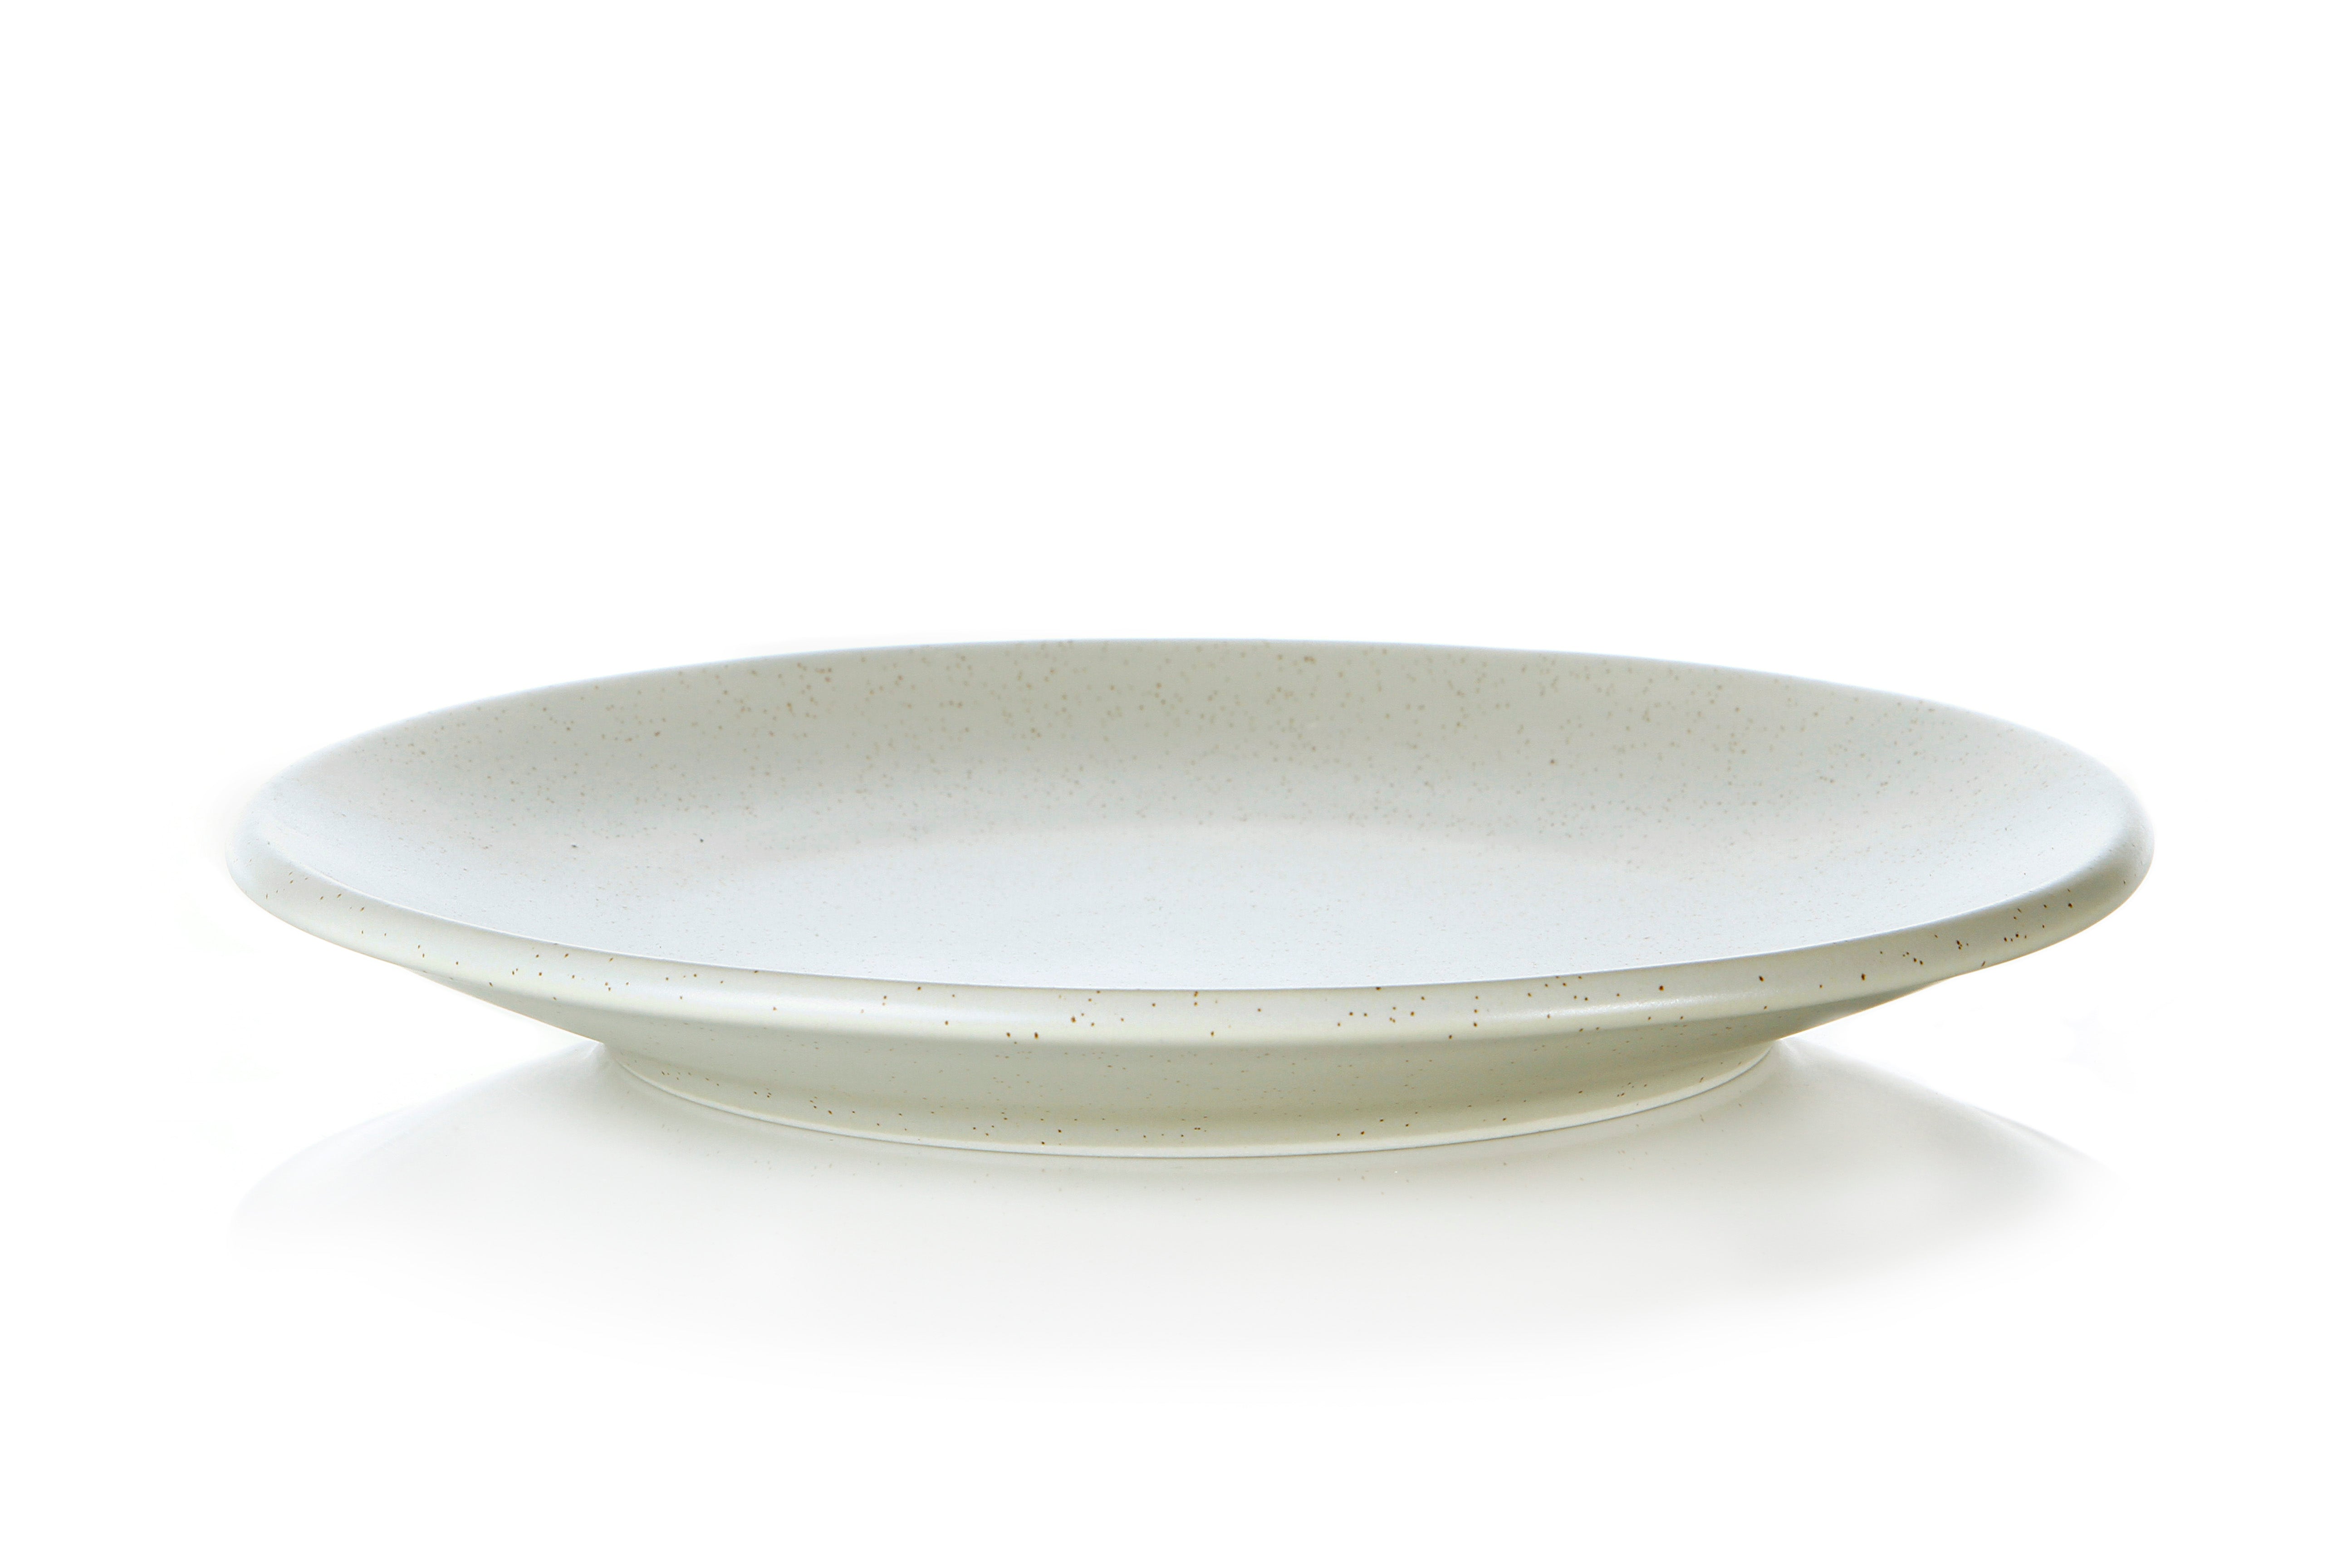 Elemental 27cm Dinner Plate - Eggshell (4 Pack)